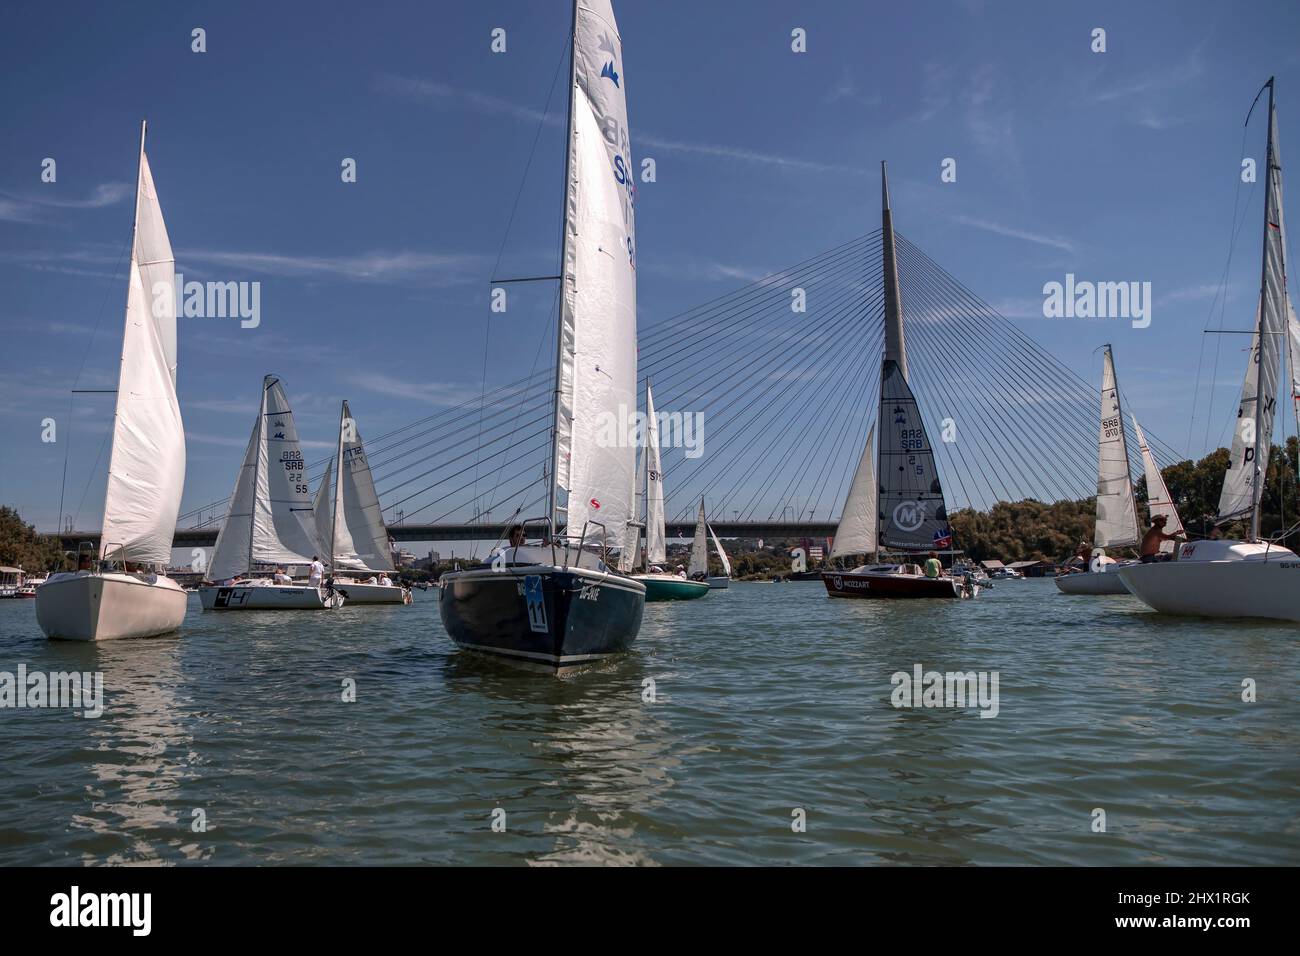 Belgrade, Serbia, Aug 18, 2019: Three-person teams competing in Micro Class sailing regatta on Sava River Stock Photo